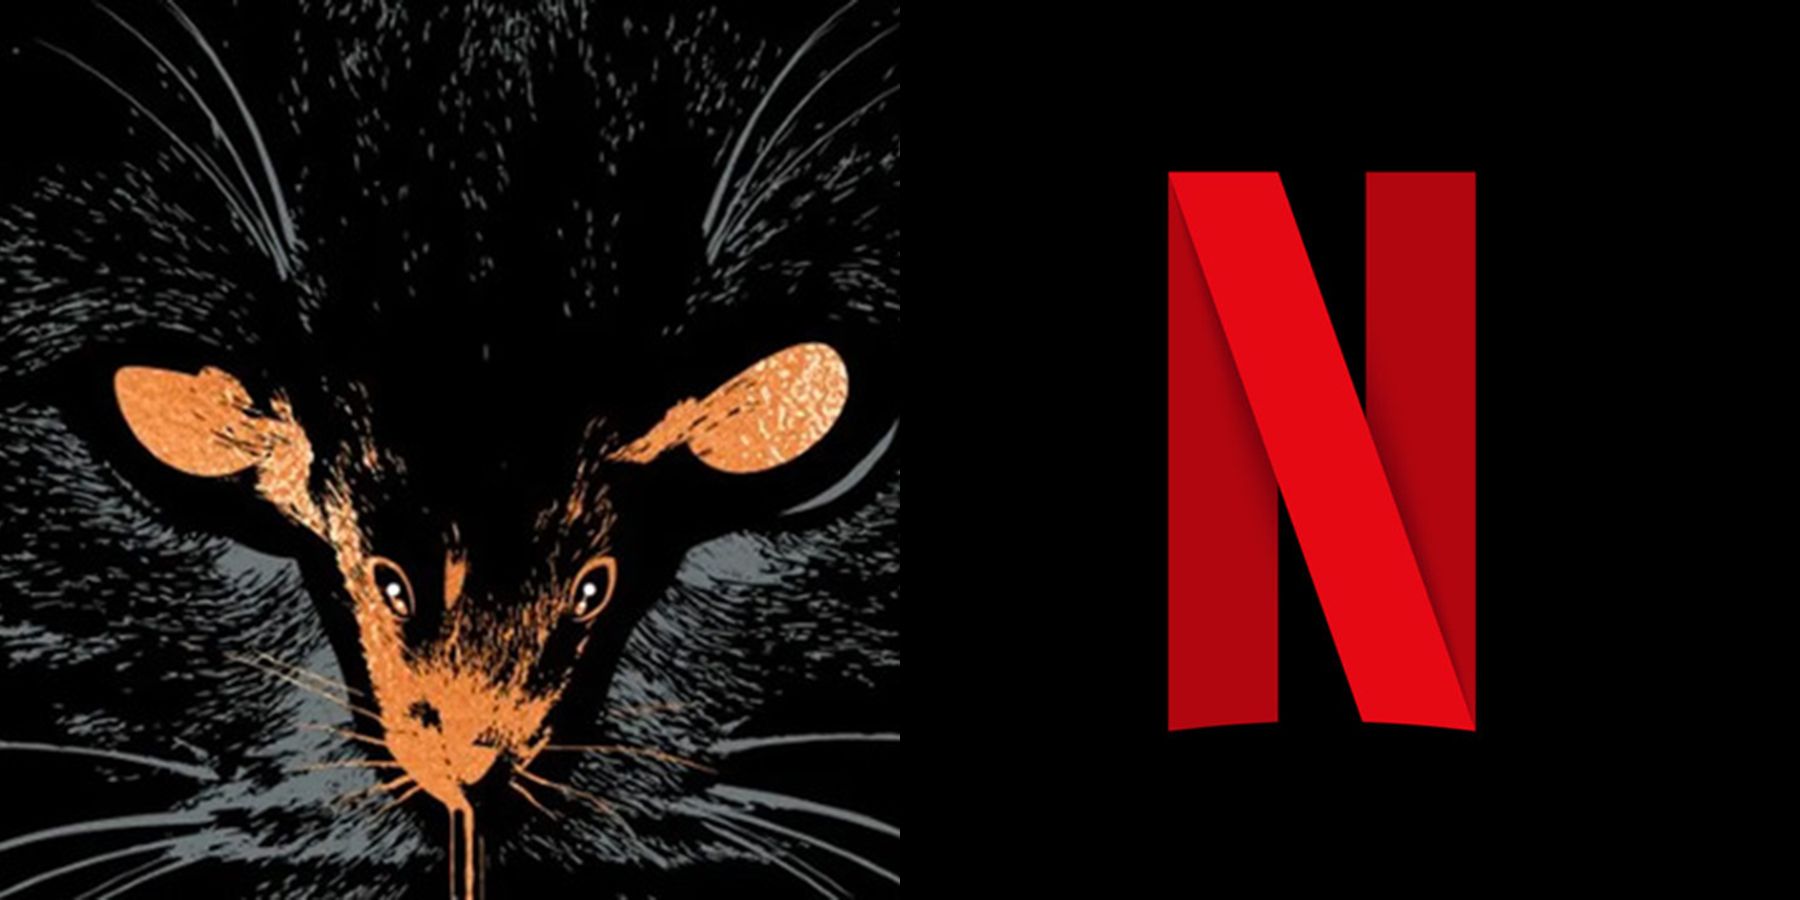 Ο Τζέισον Μπλουμ και ο Ράιαν Μέρφι κάνουν την παραγωγή της προσαρμογής του Στίβεν Κινγκ για το Netflix